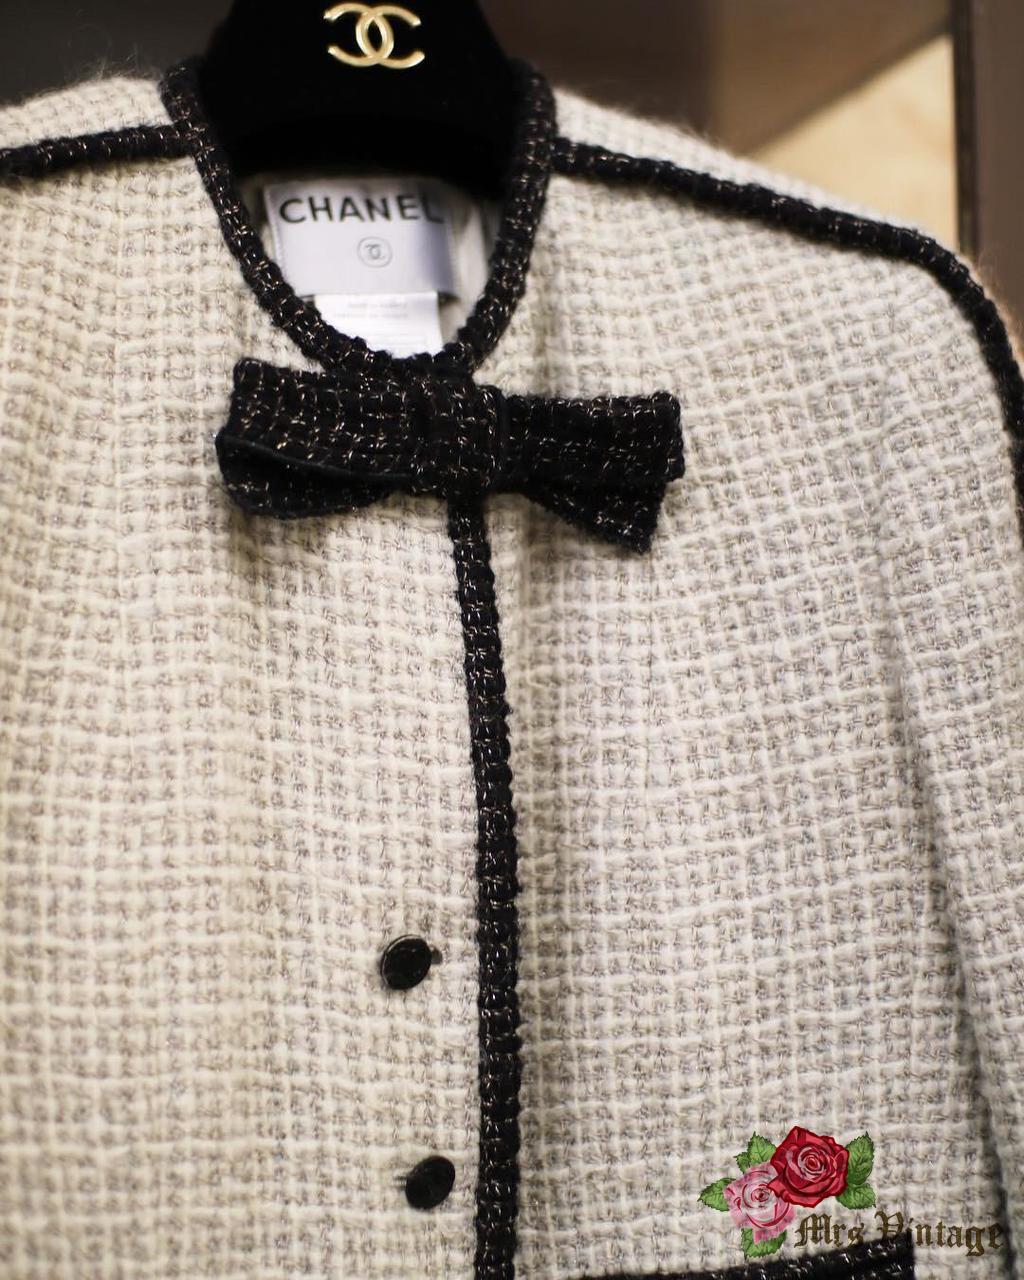 CHANEL, Jackets & Coats